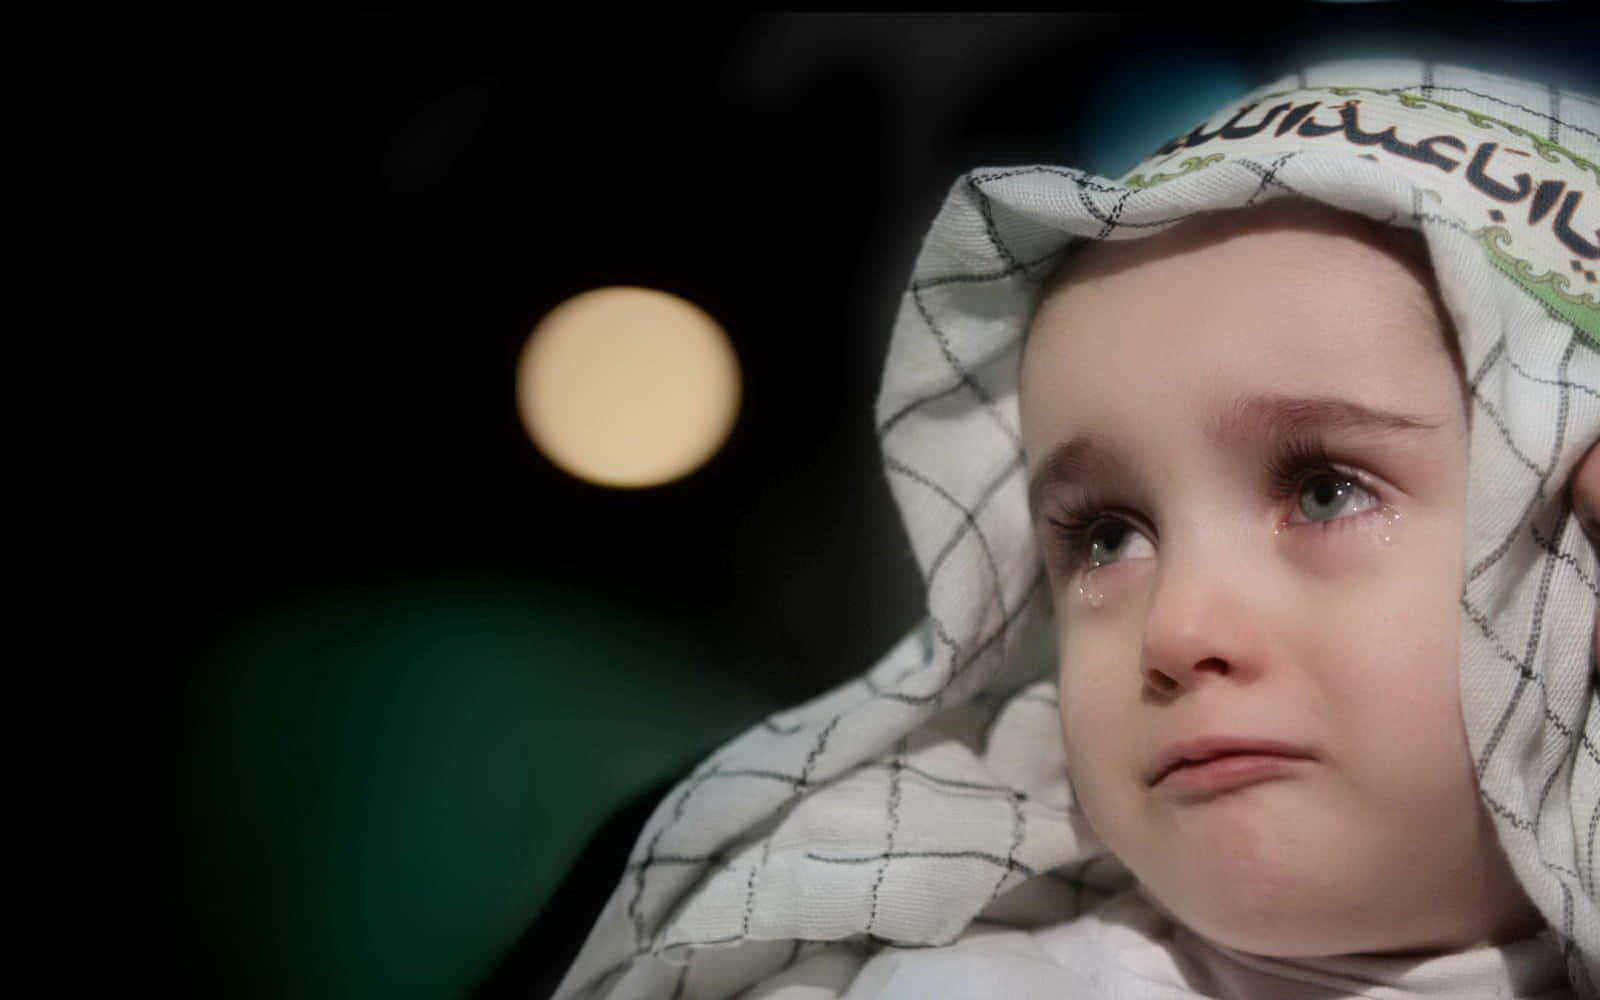 Gråtandebild Av En Babypojke.